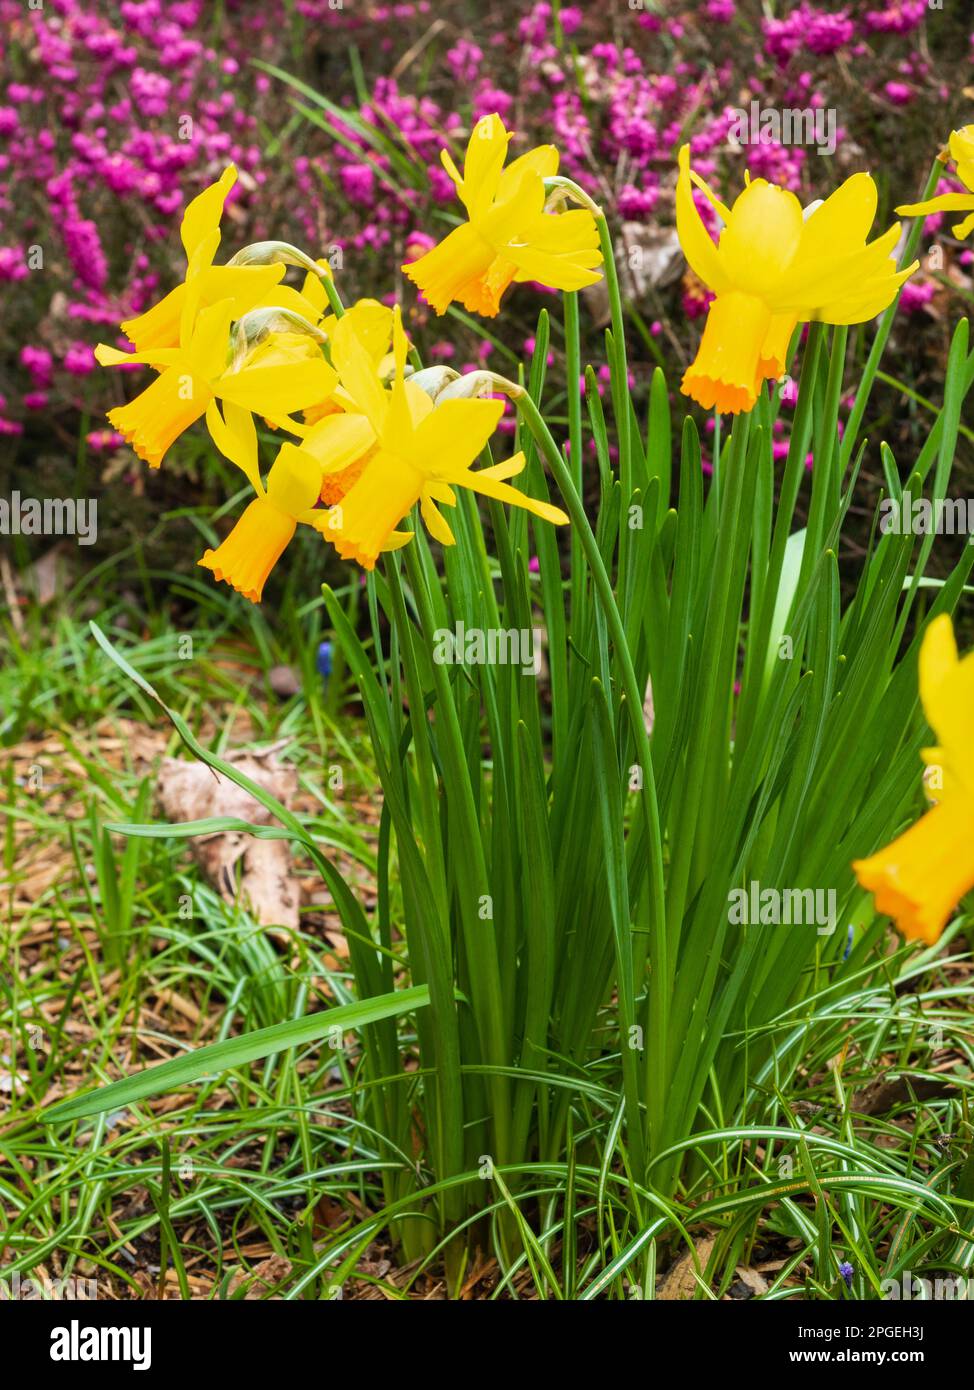 Trompette orange et pétales jaune réfléchissants du daffodil hybride cyclamineus nain, Narcissus 'Jetfire' Banque D'Images